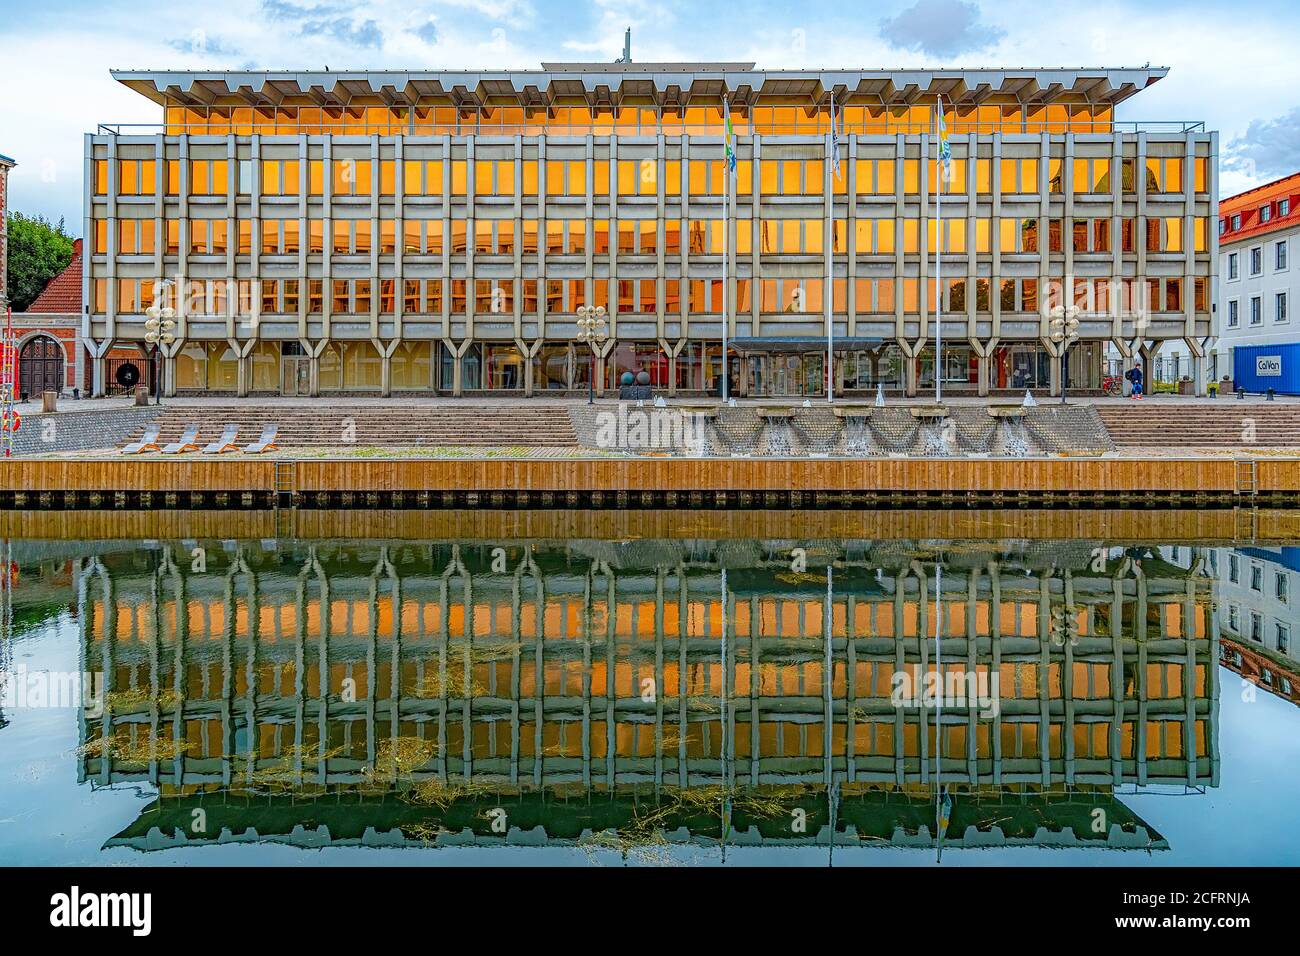 LANDSKRONA, SWEDEN - AUGUST 25, 2020: Landskrona stadshuset, the modern town hall building in the city. Stock Photo